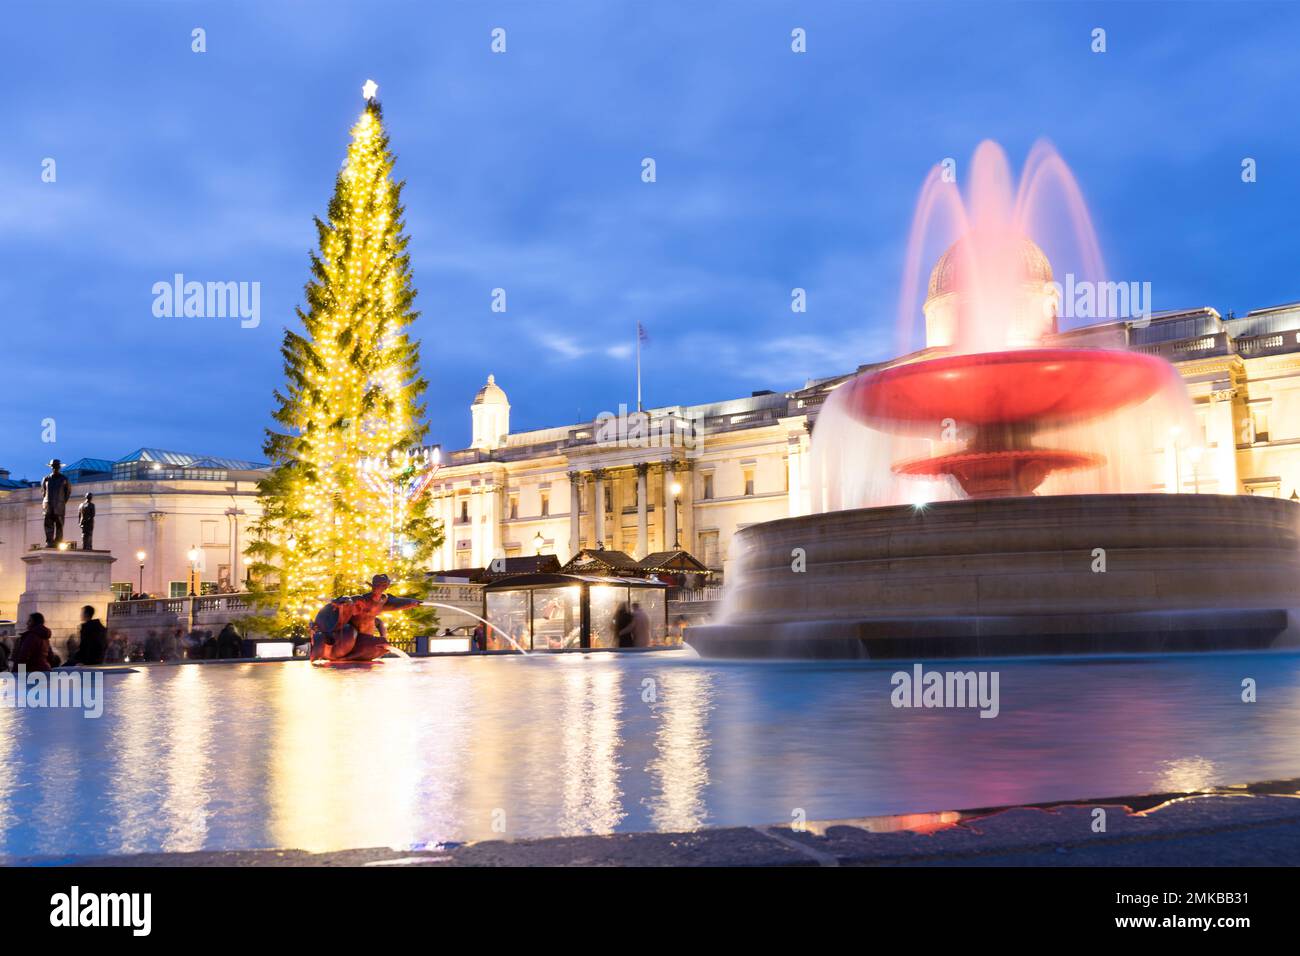 Albero di Natale e luci a Trafalgar Square di fronte alla galleria nazionale London Westend England UK Foto Stock